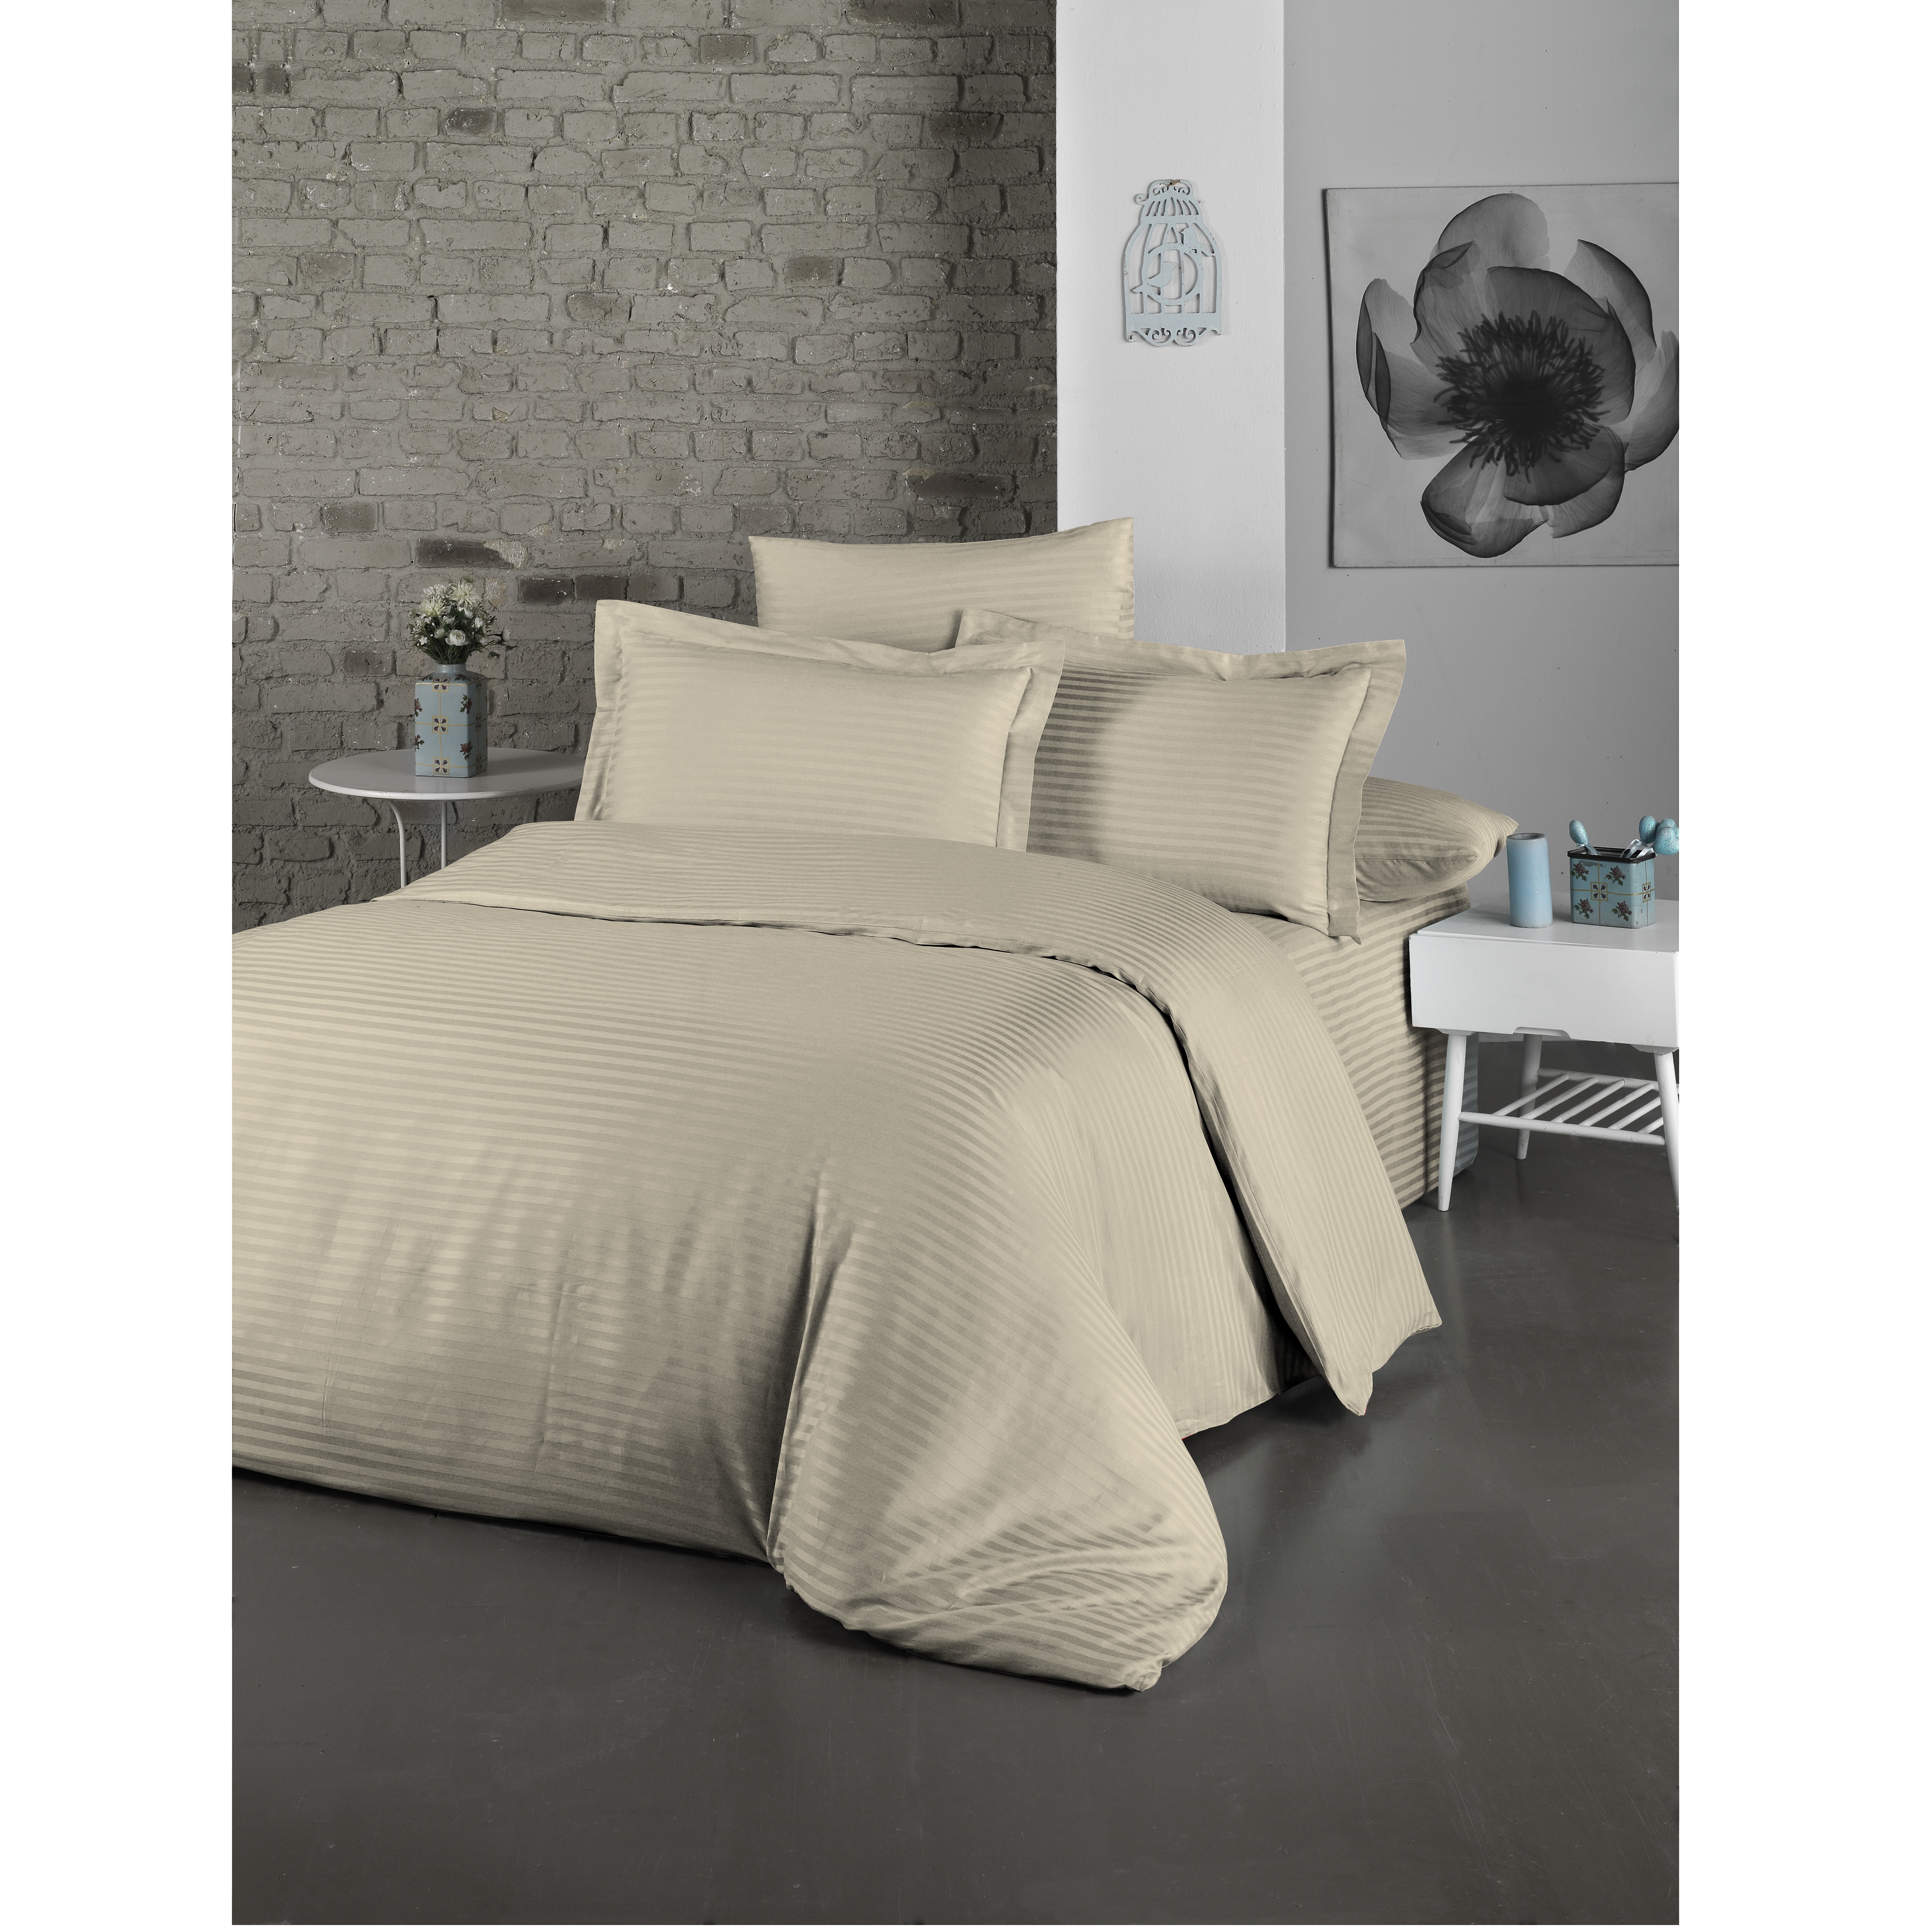 Комплект постельного белья LightHouse Exclusive Sateen Stripe Lux, сатин, евростандарт, 220x200 см, бежевый (2200000550170) - фото 1